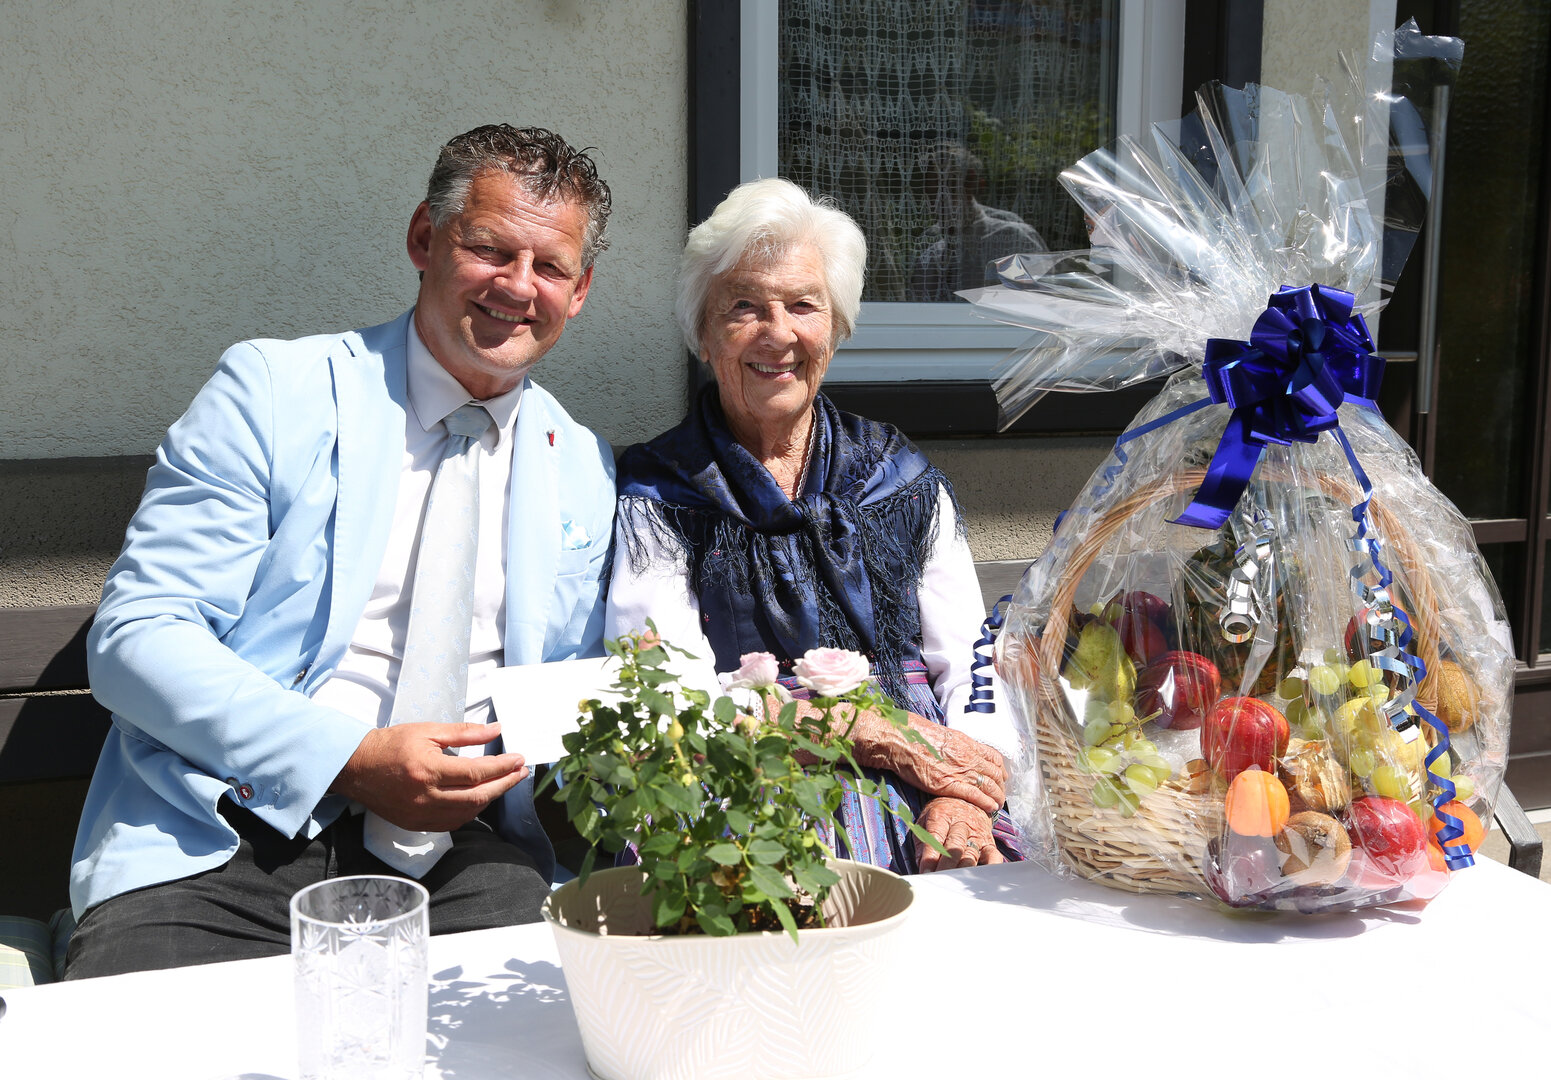 Bürgermeister Christian Scheider gratulierte Franziska Kabusch persönlich zu ihrem 100. Geburtstag. Foto: StadtKommunikation / Krainz